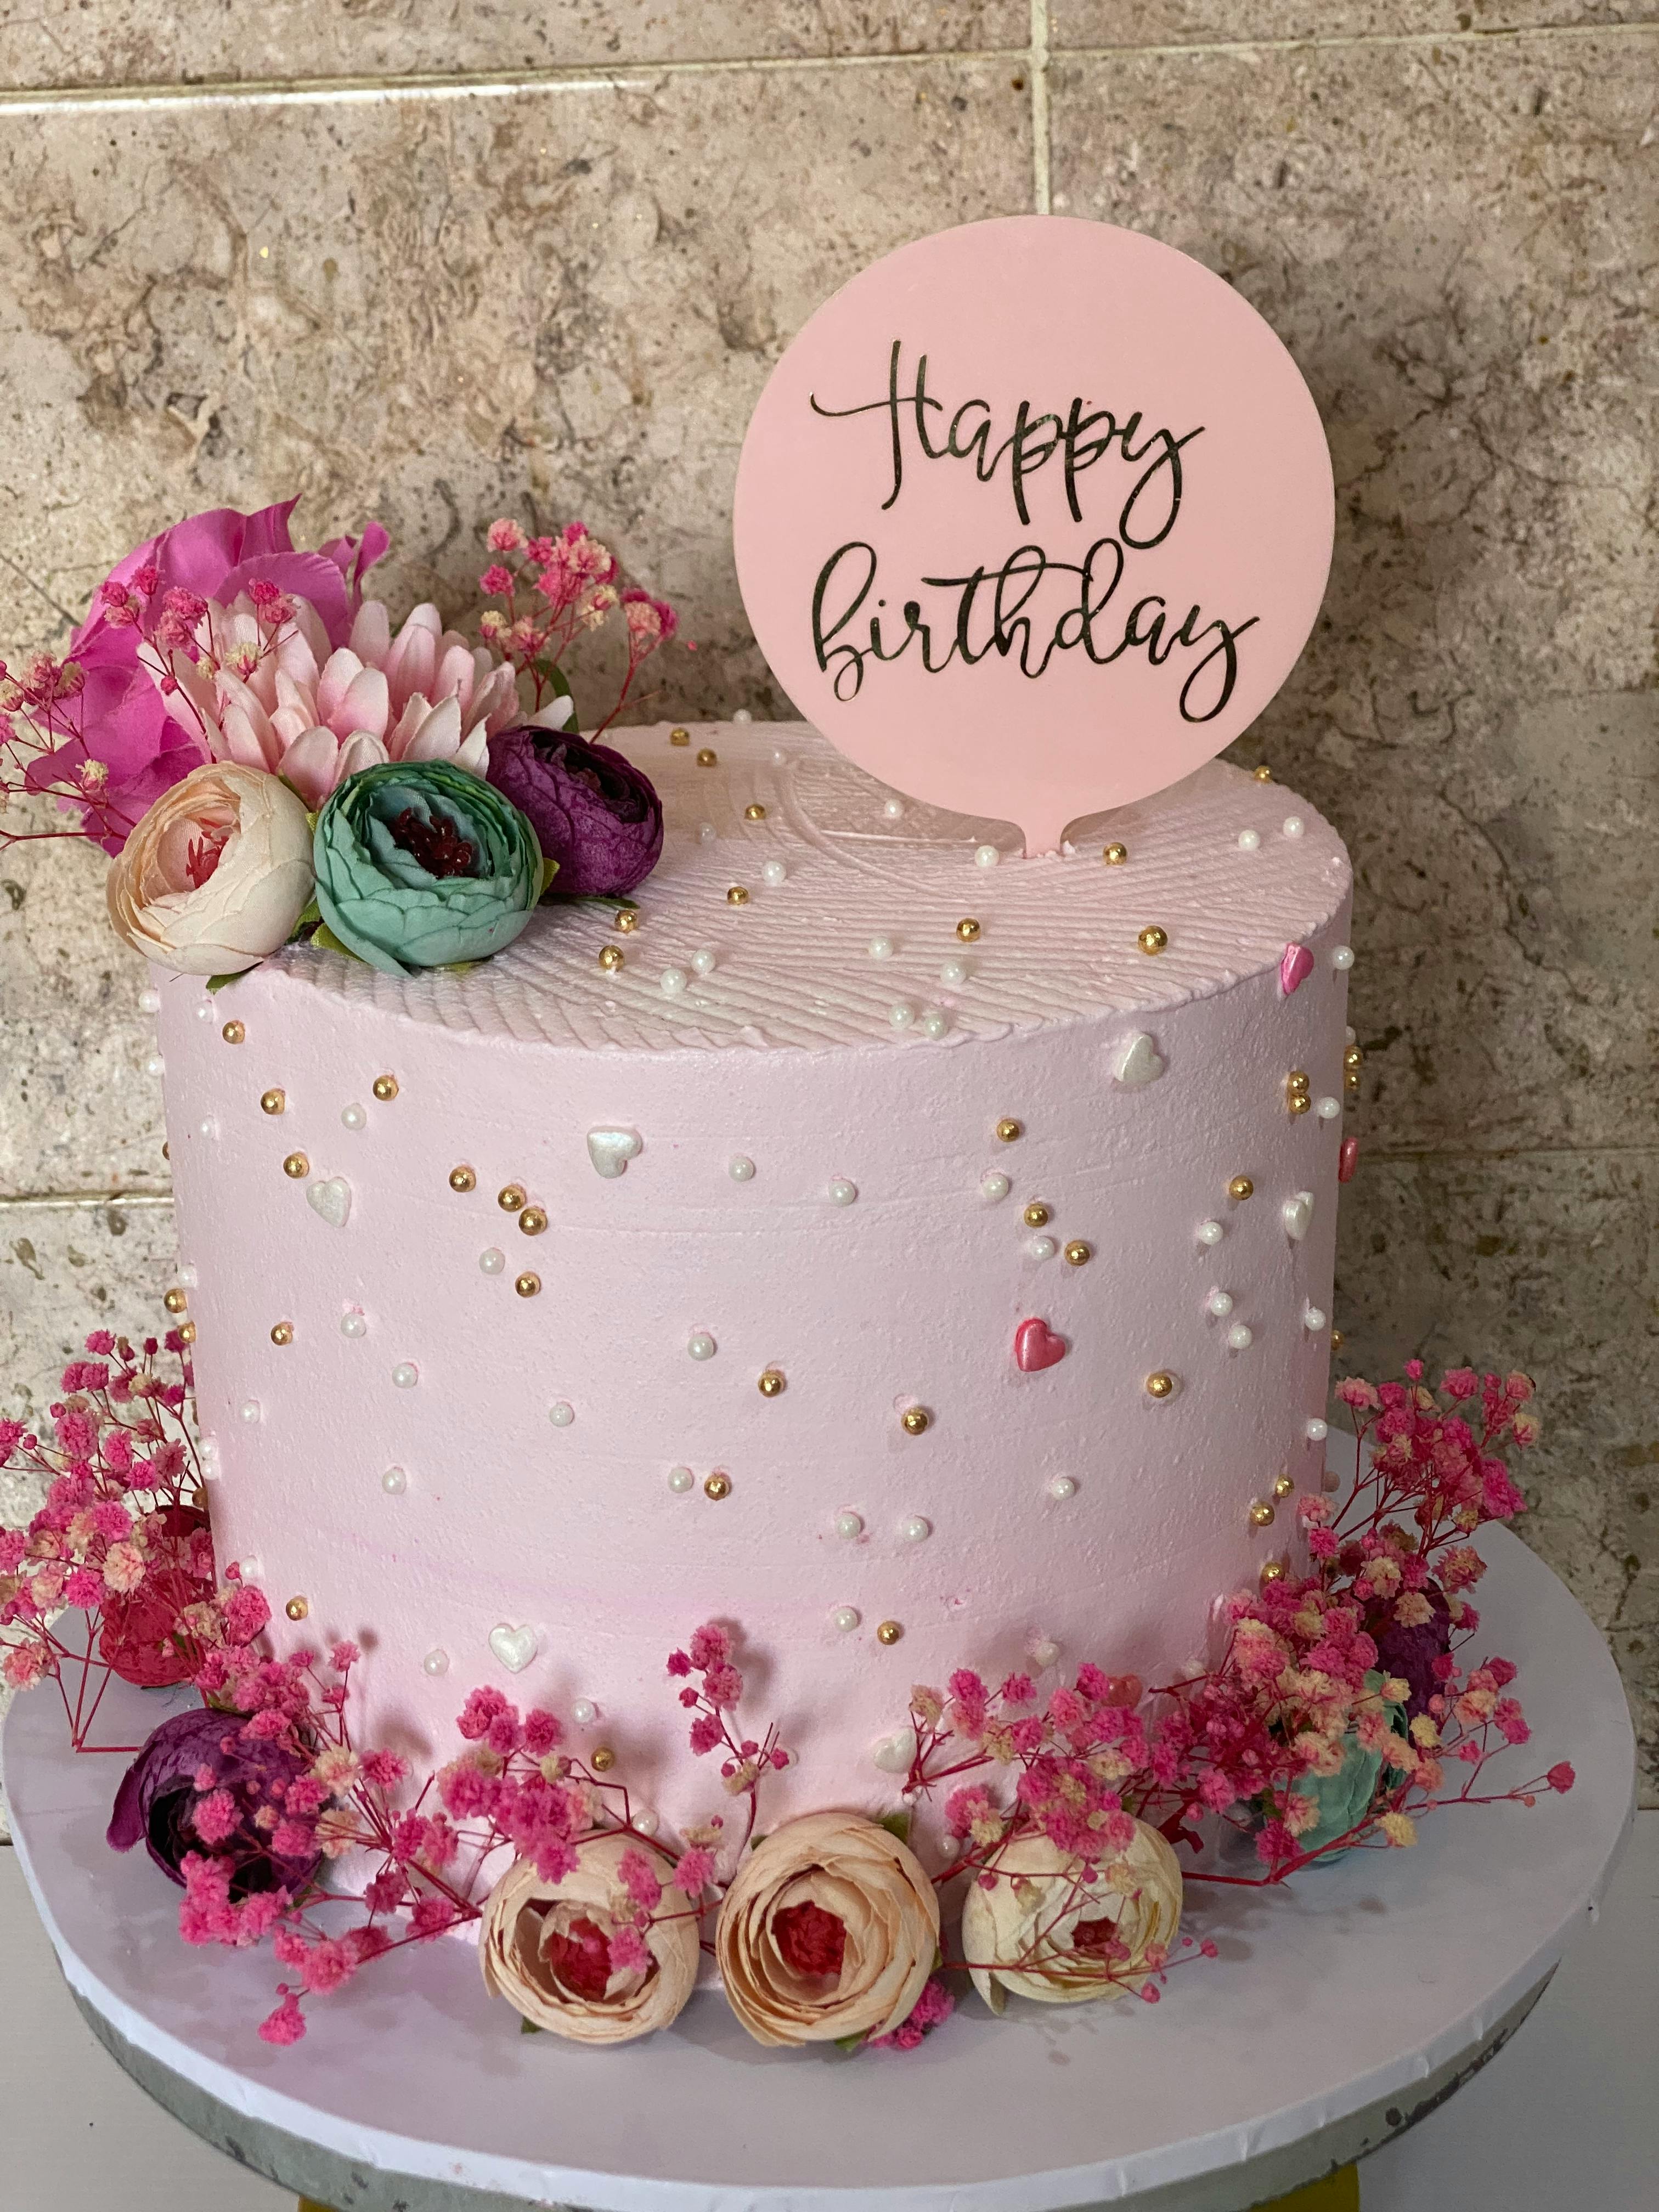 Enjoy 105+ birthday cake images latest